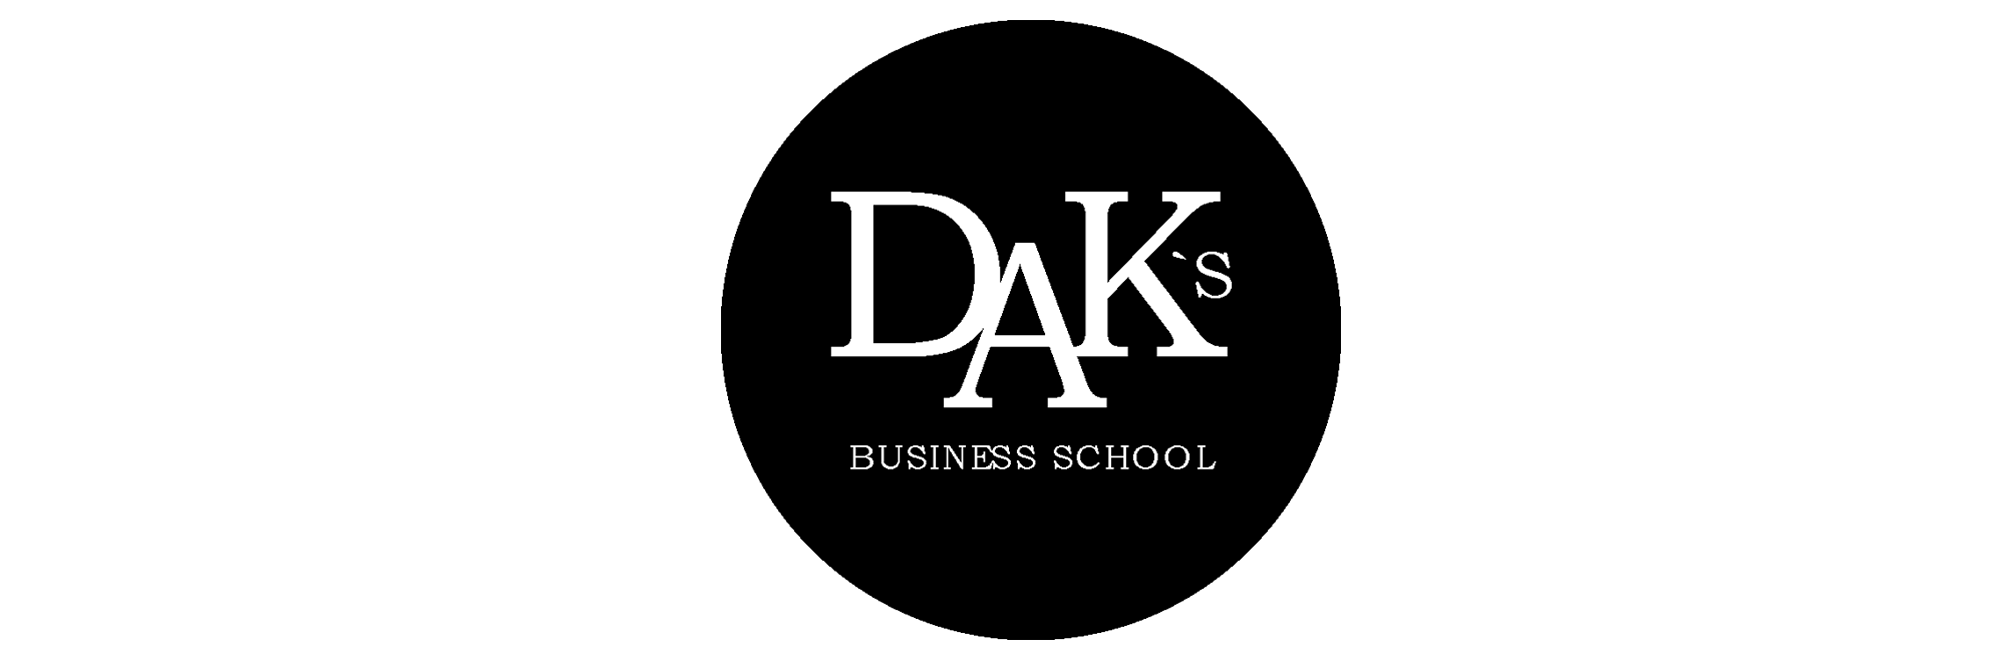 DAK`s Business School